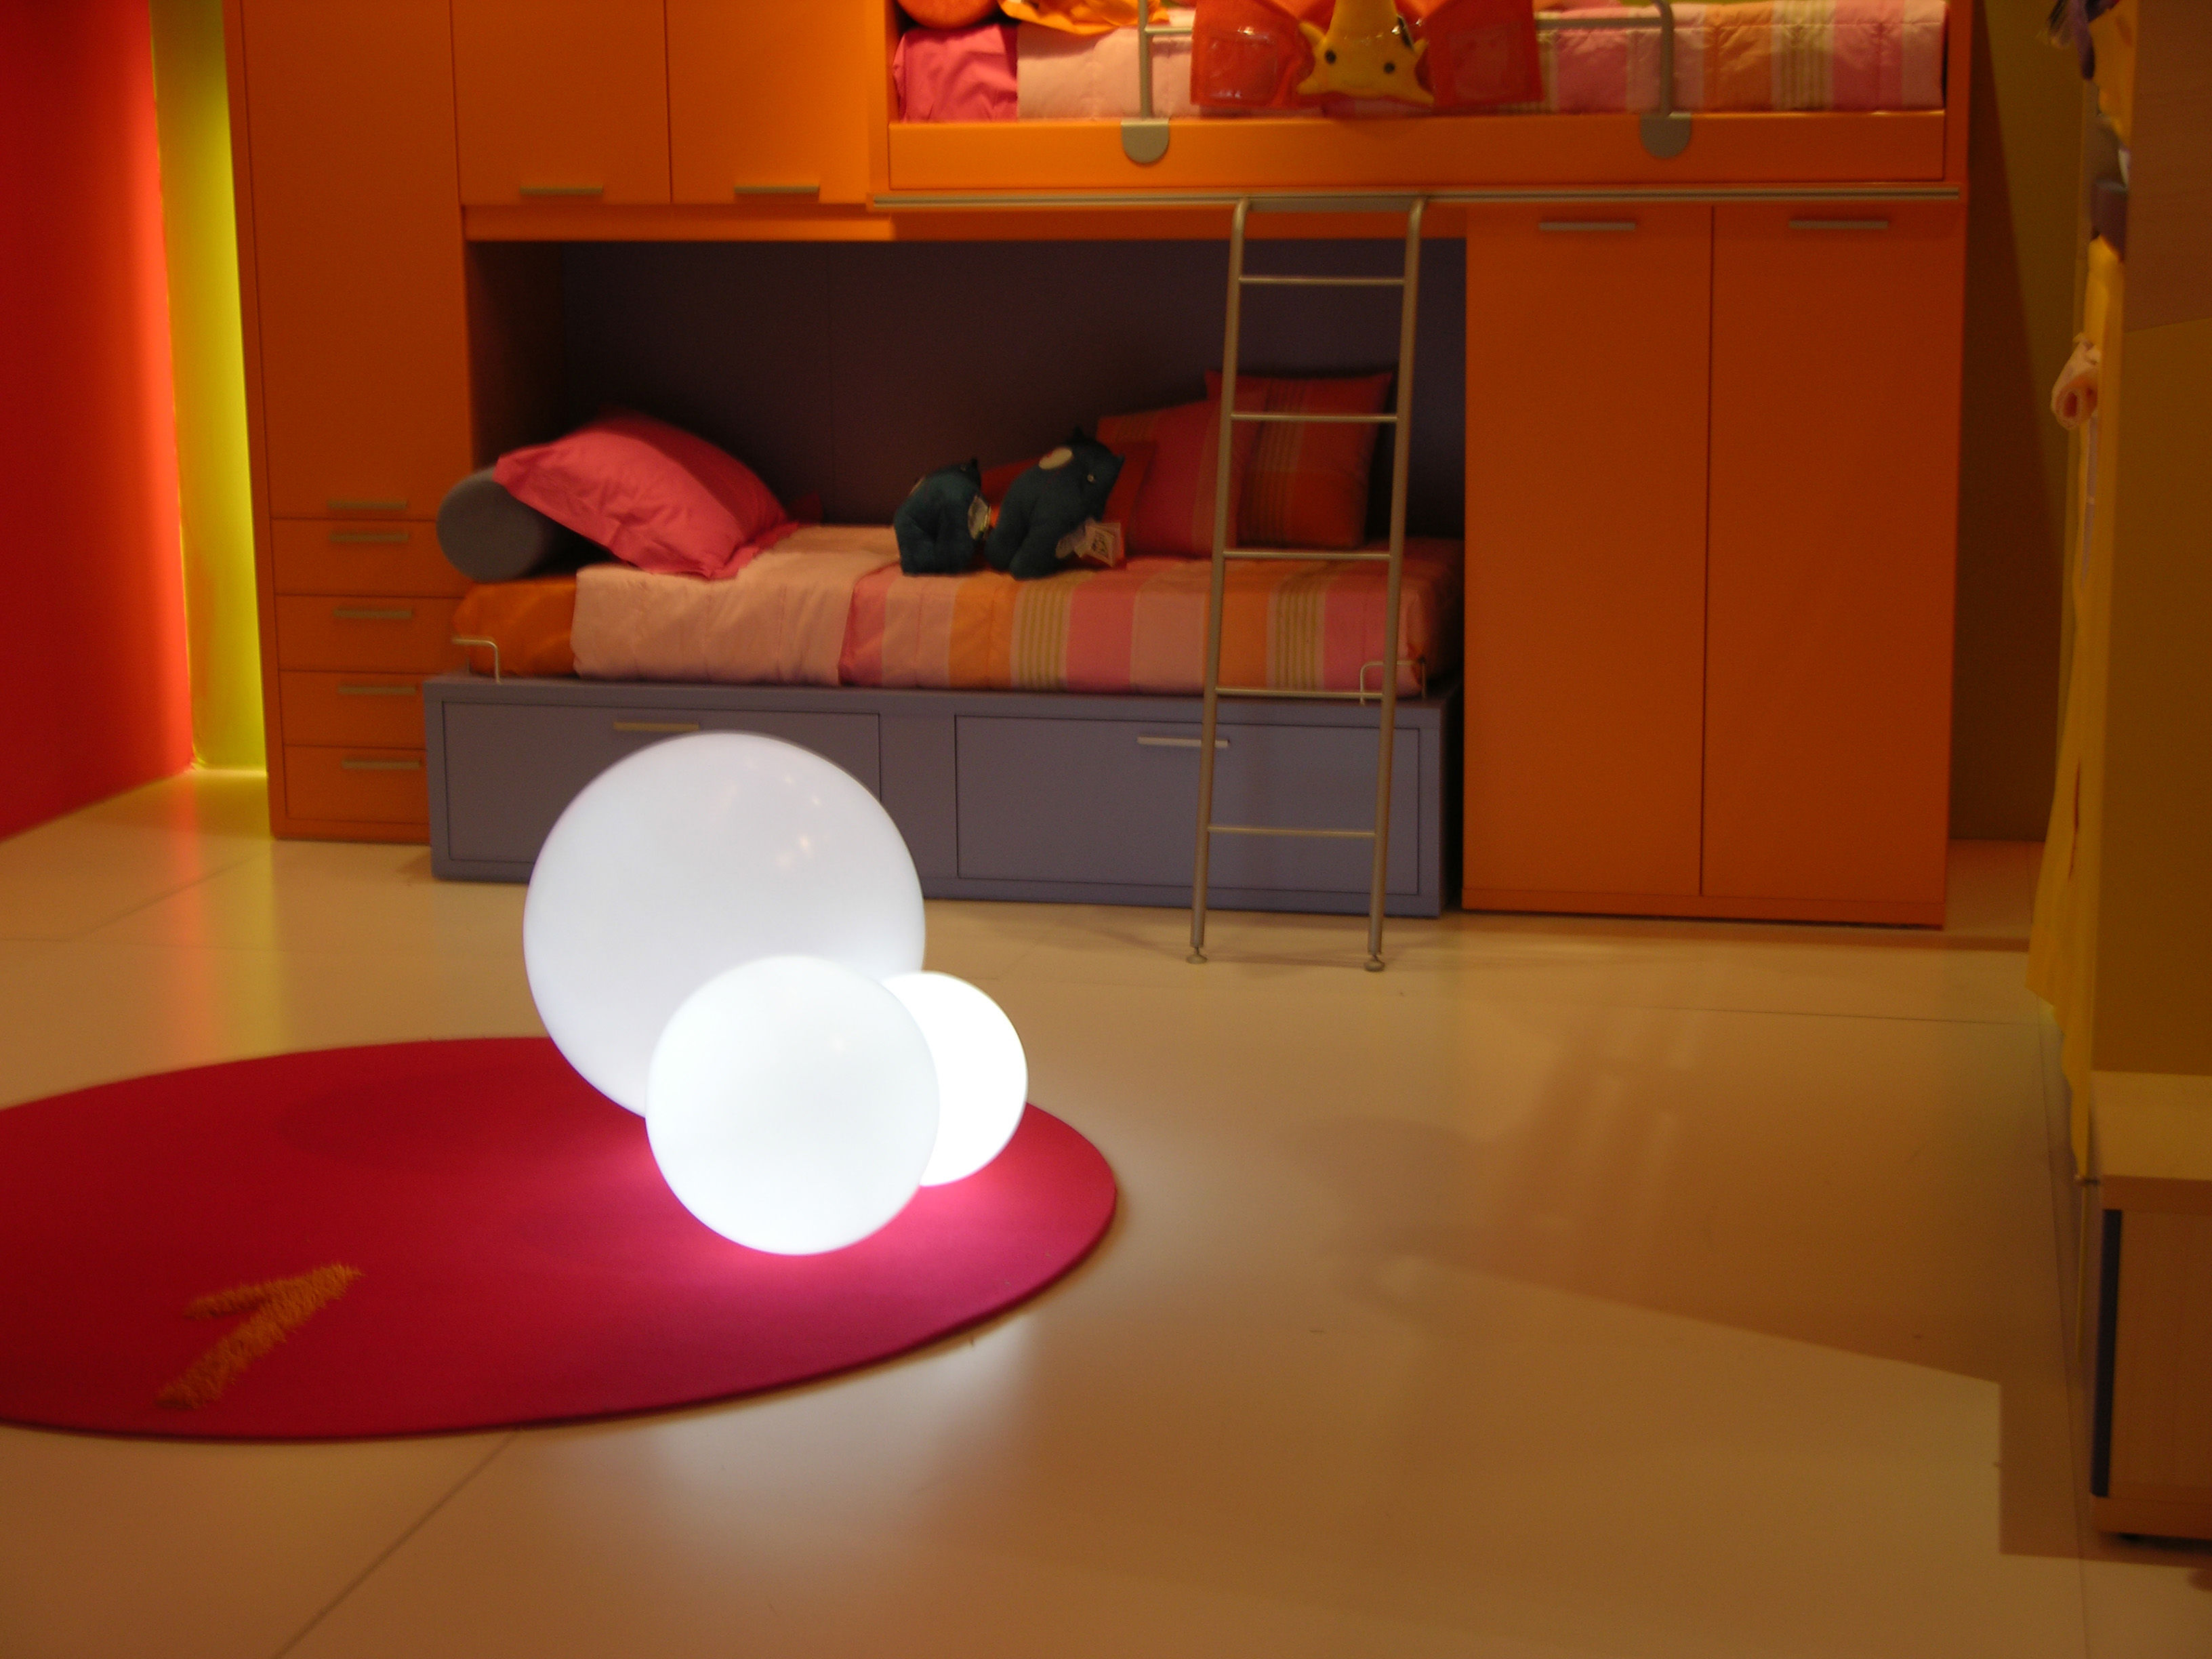 Lampada da terra tavolo a sfera design moderno Slide Globo In